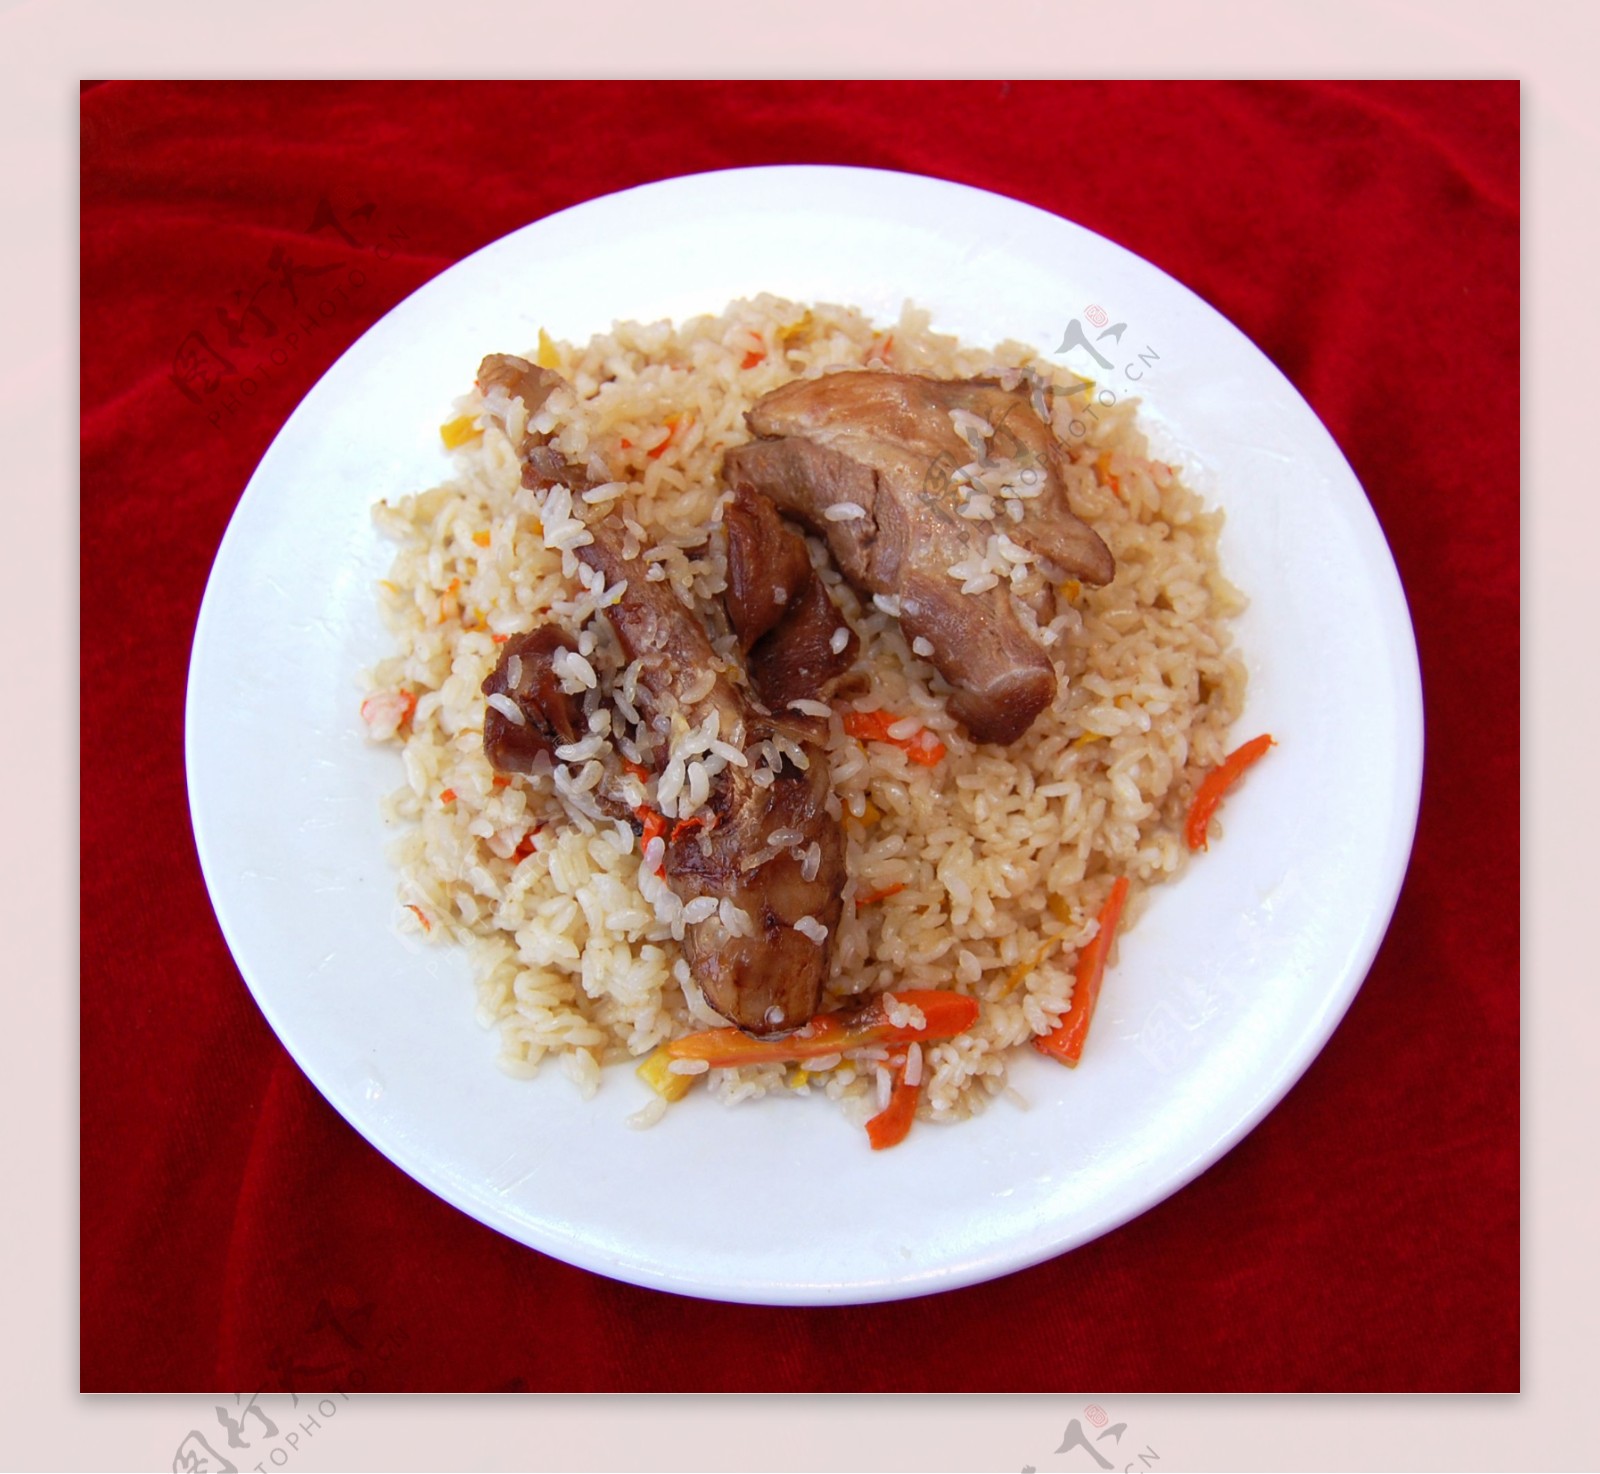 油润的米饭大块的羊肉，这才是真正的新疆手抓饭